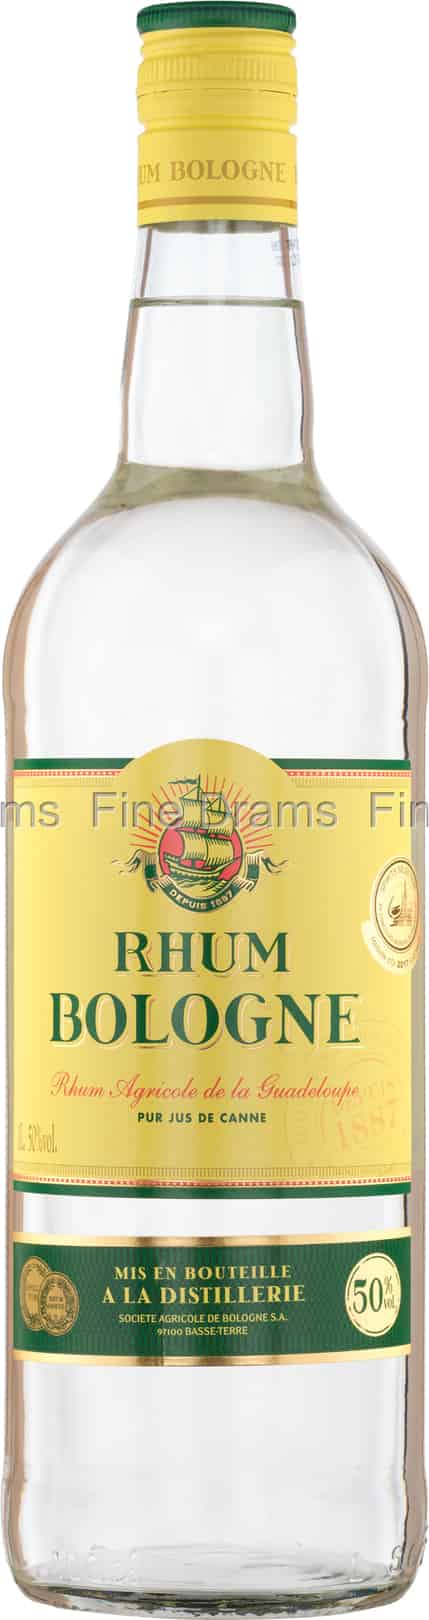 Rhum Agricole Guadeloupe Blanc 55° Distillerie Bologne - La Cave  Saint-Vincent